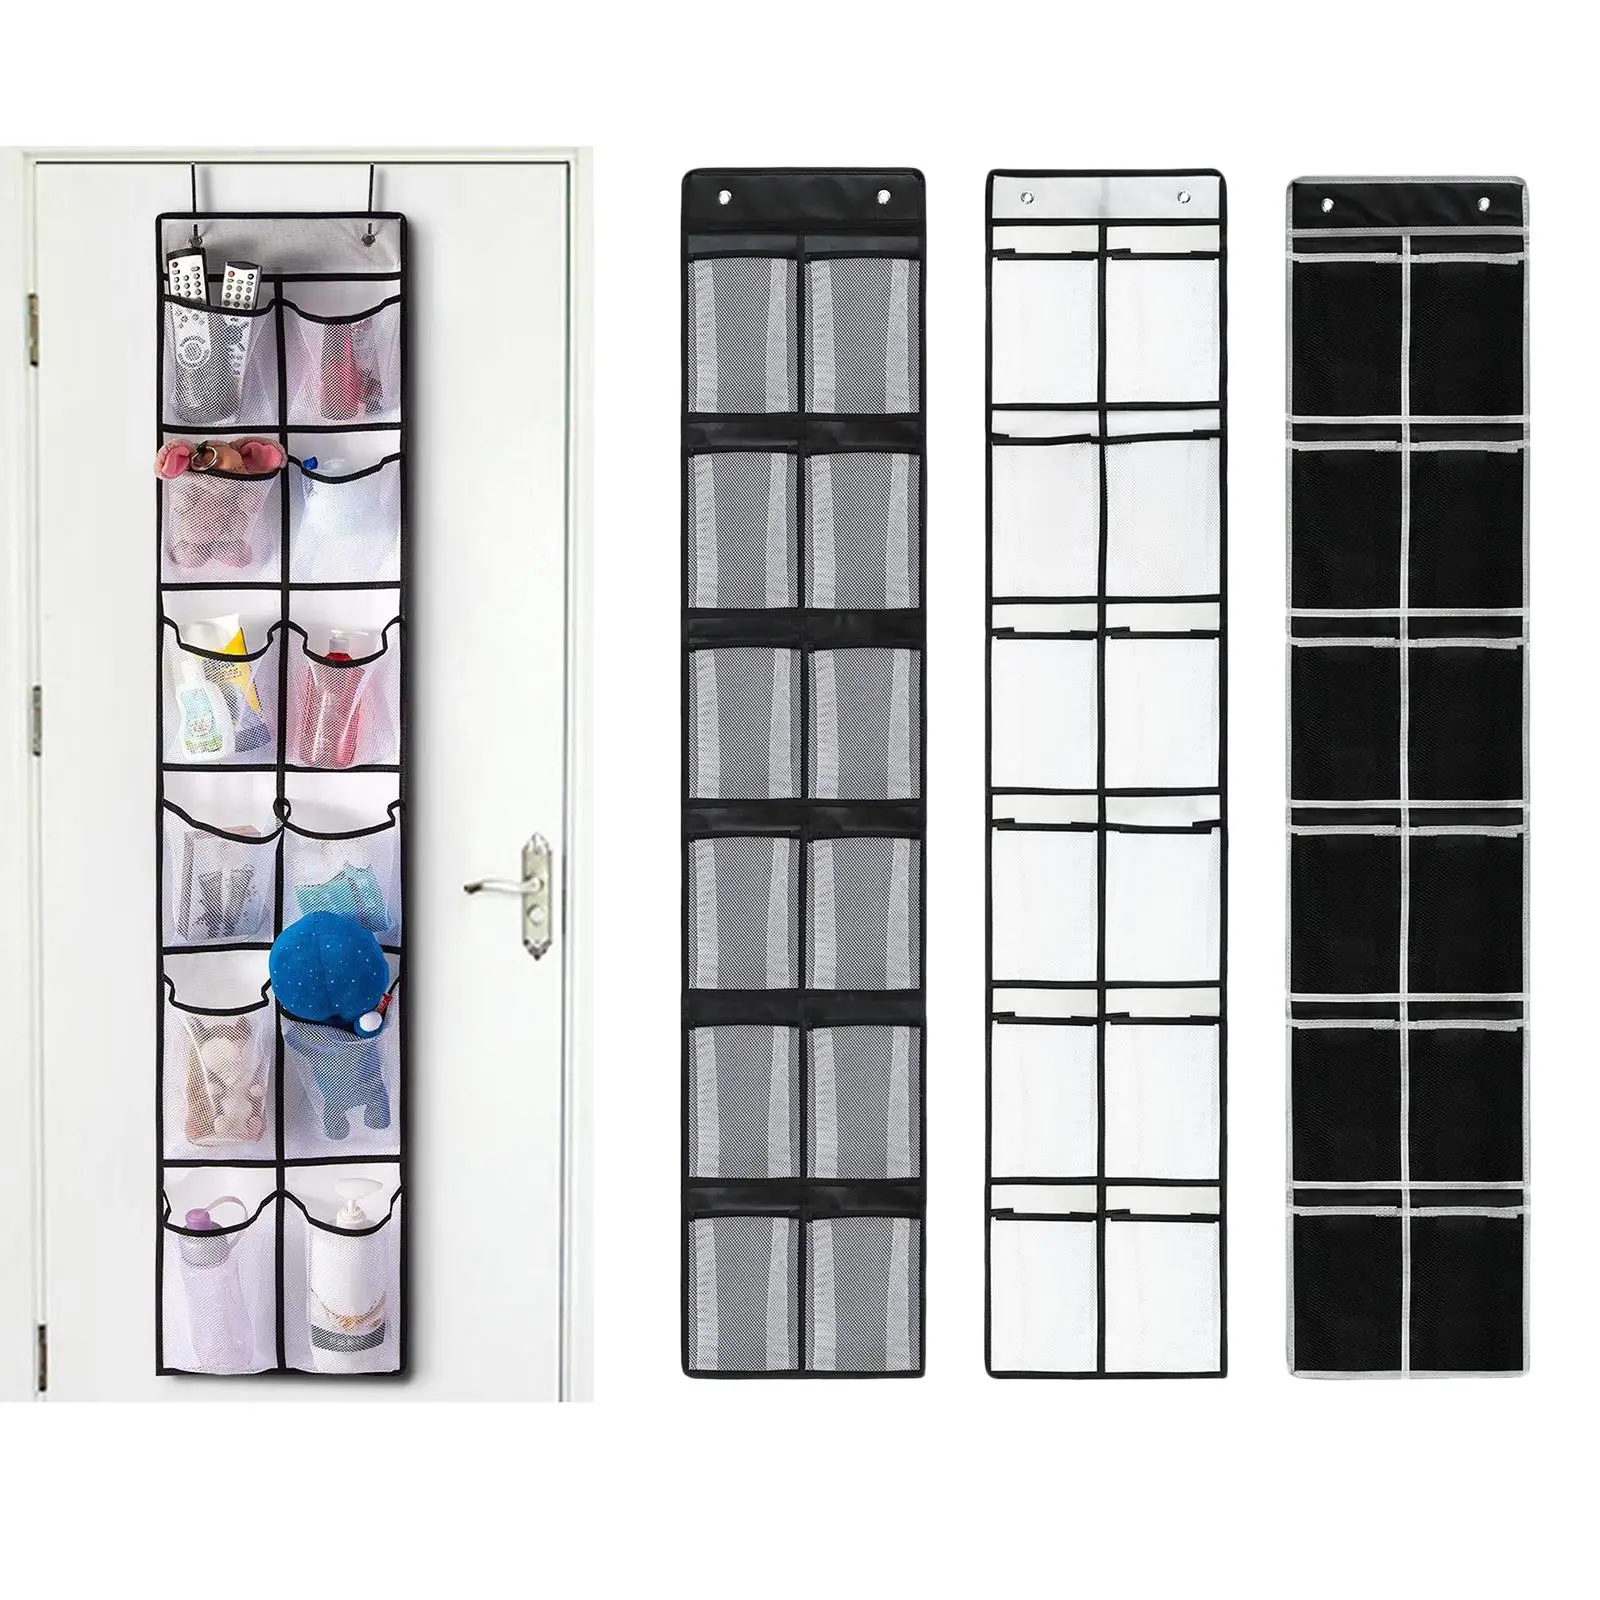 12 Grids Hanging Organizer Storage Holder for Closet Wardrobe 